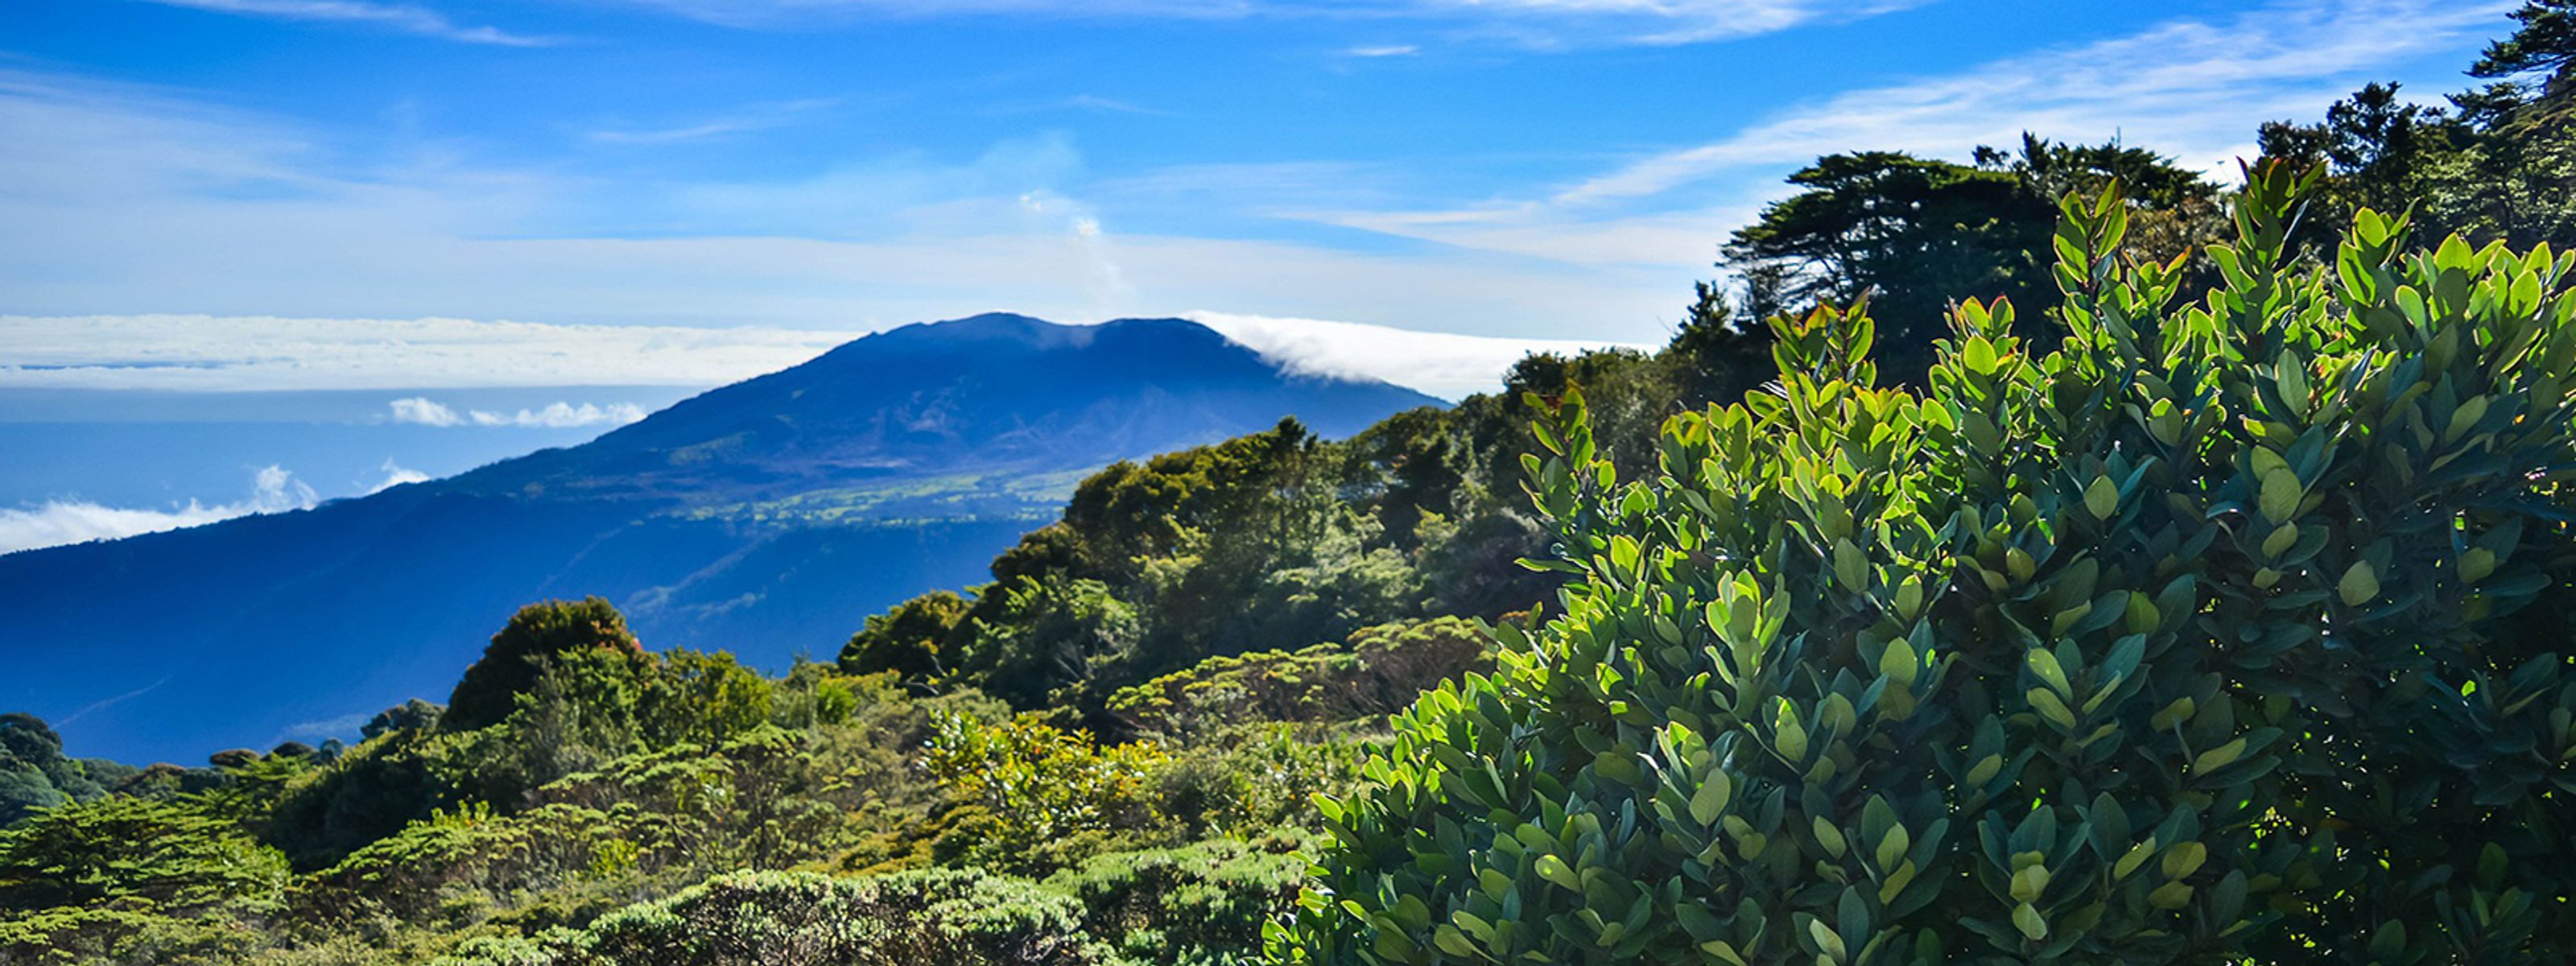 Panorama über herrliche Berge und den Regenwald, Costa Rica